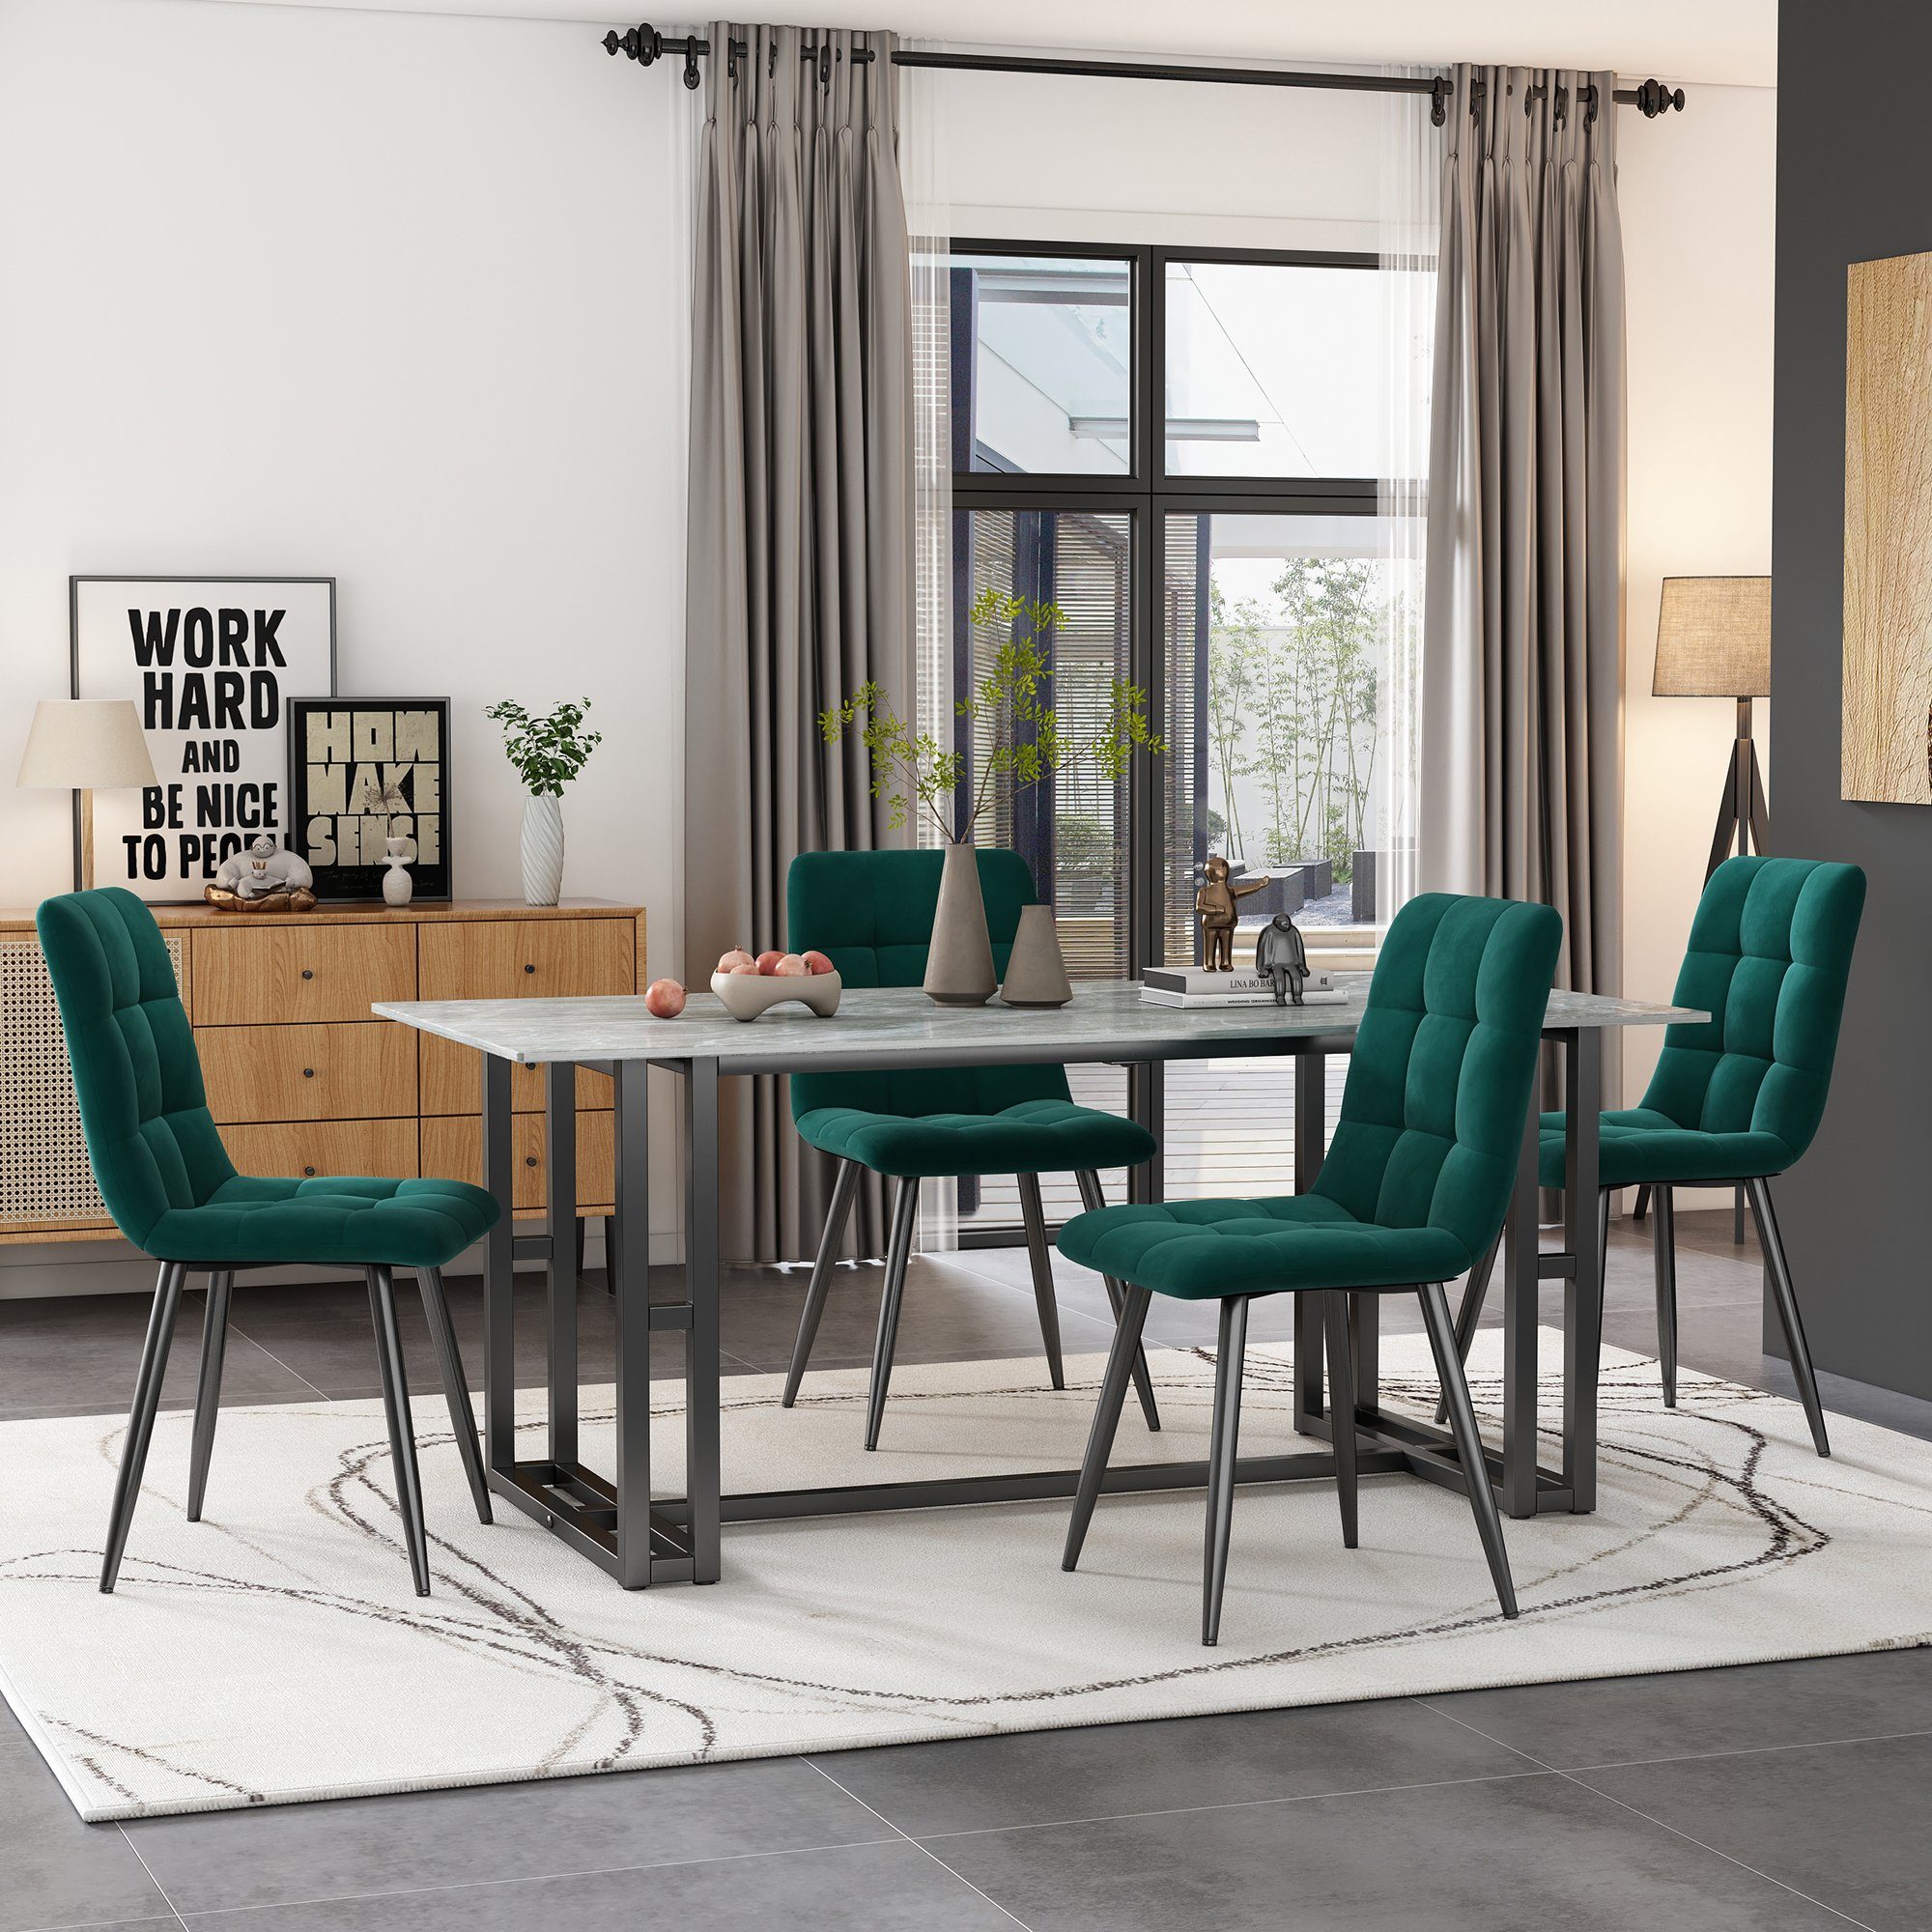 BUMHUM Esstisch 4erSet Dunkelgrüne Esszimmerstühle mit Samtpolsterung  Metallgestell, Samt-Stuhl mit Rückenlehne, grün, weiche Sitzfläche